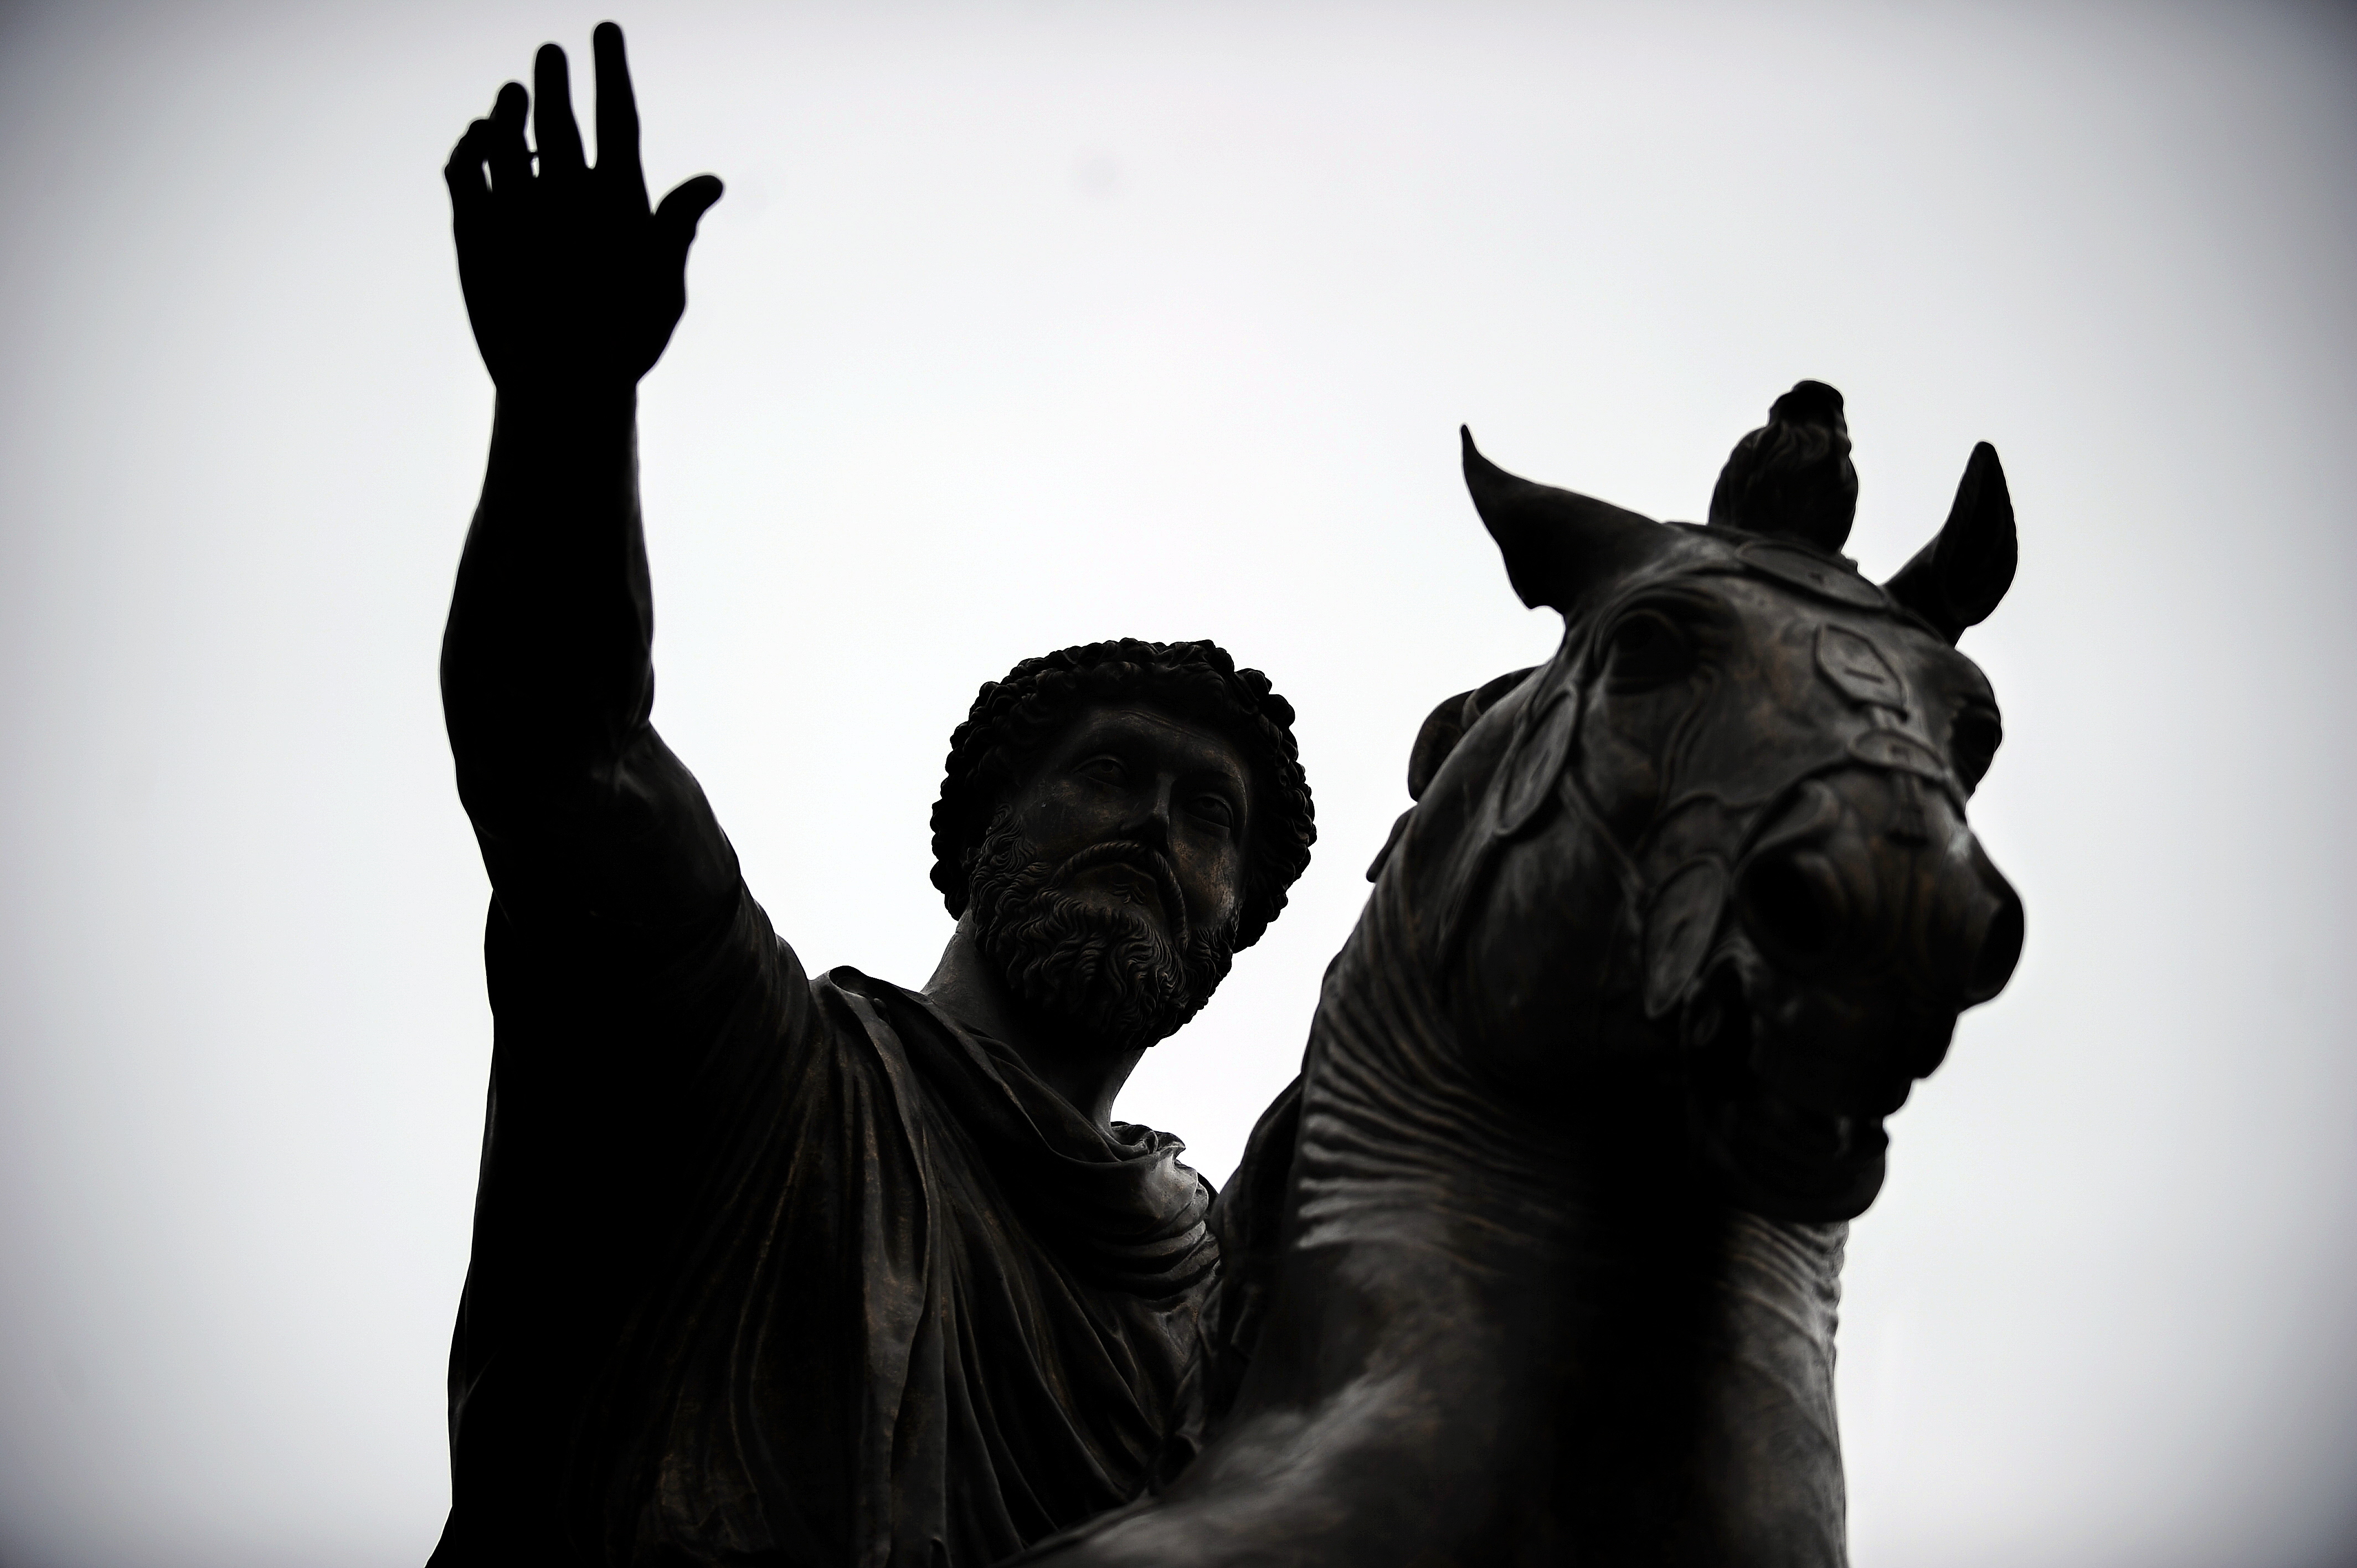 Equestrian Statue of emperor of the Roman empire Marcus Aurelius (Photo: FILIPPO MONTEFORTE/AFP/Getty Images)